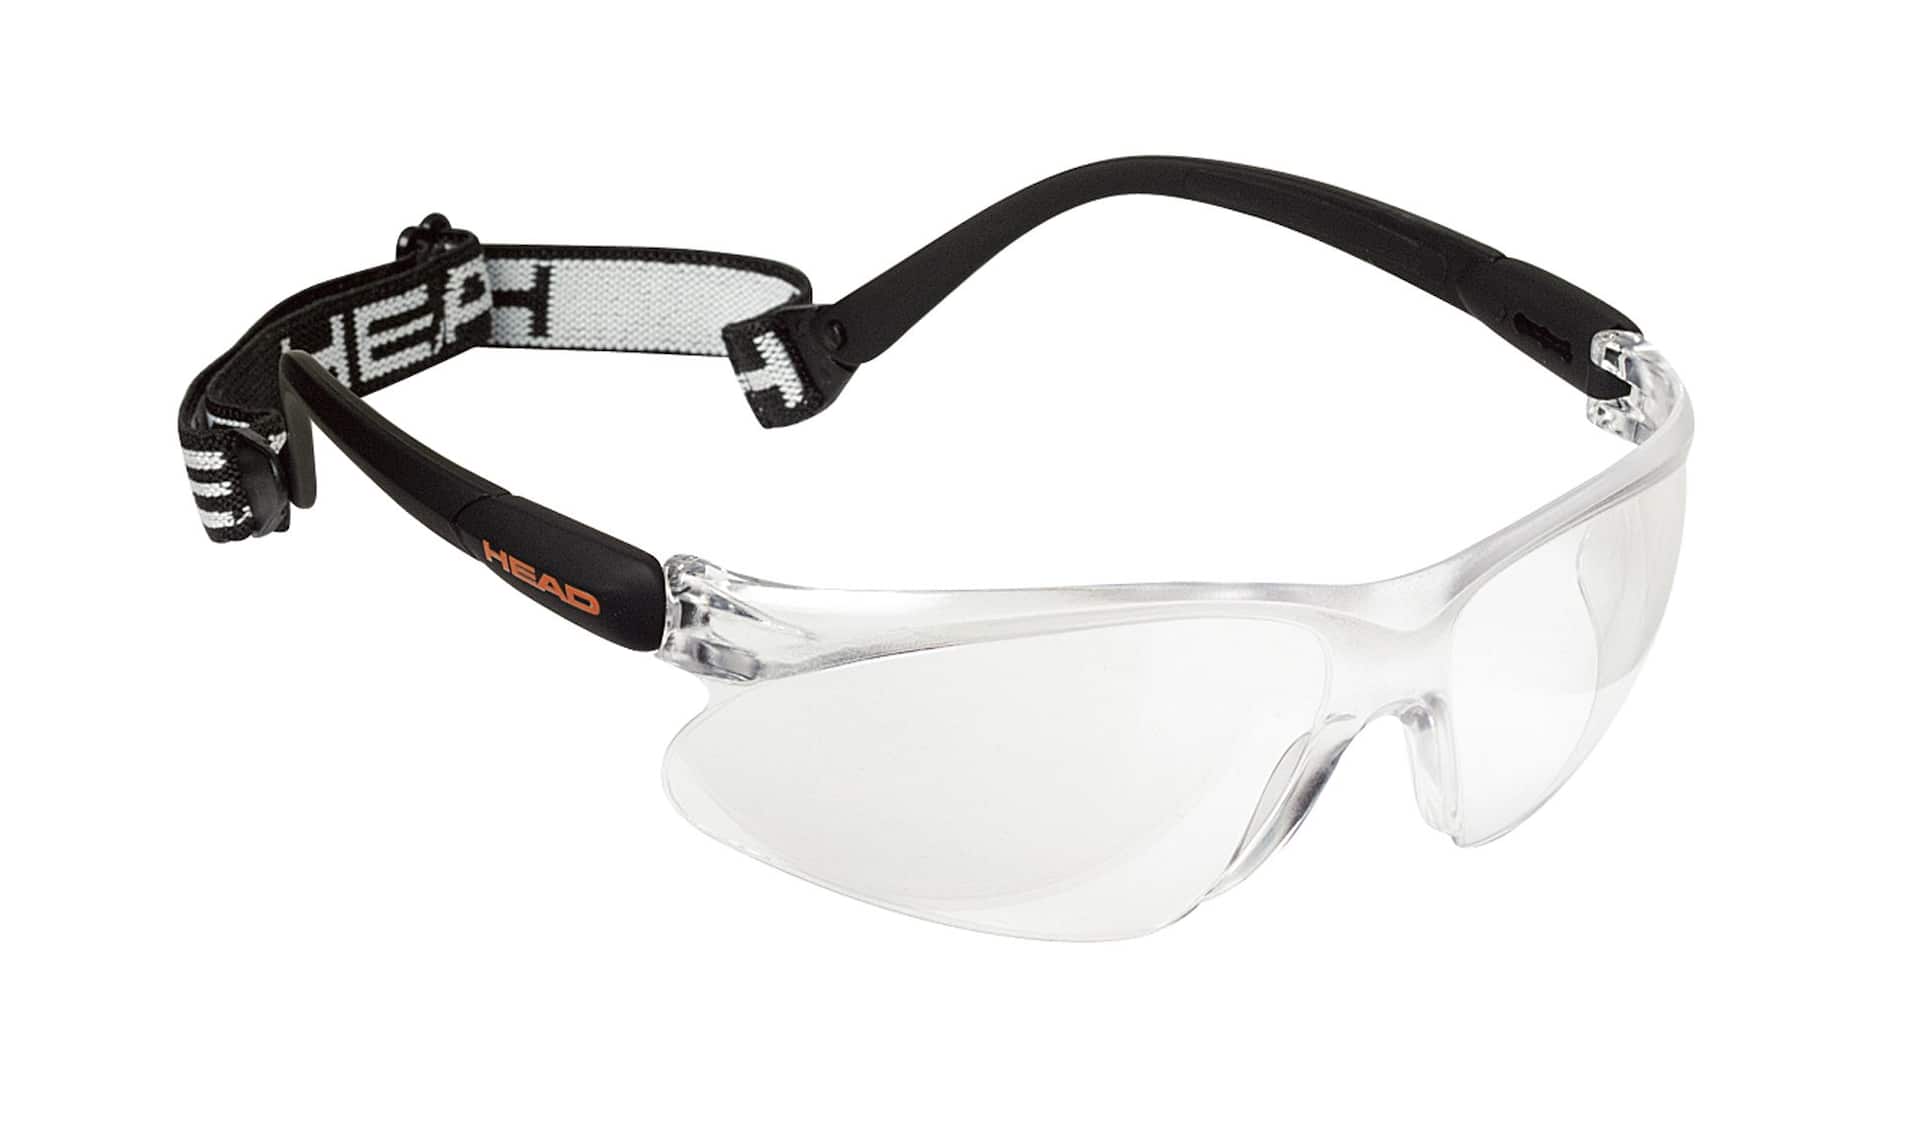 Pièces détachées et accessoires de lunettes Pare-Soleil, Optiques